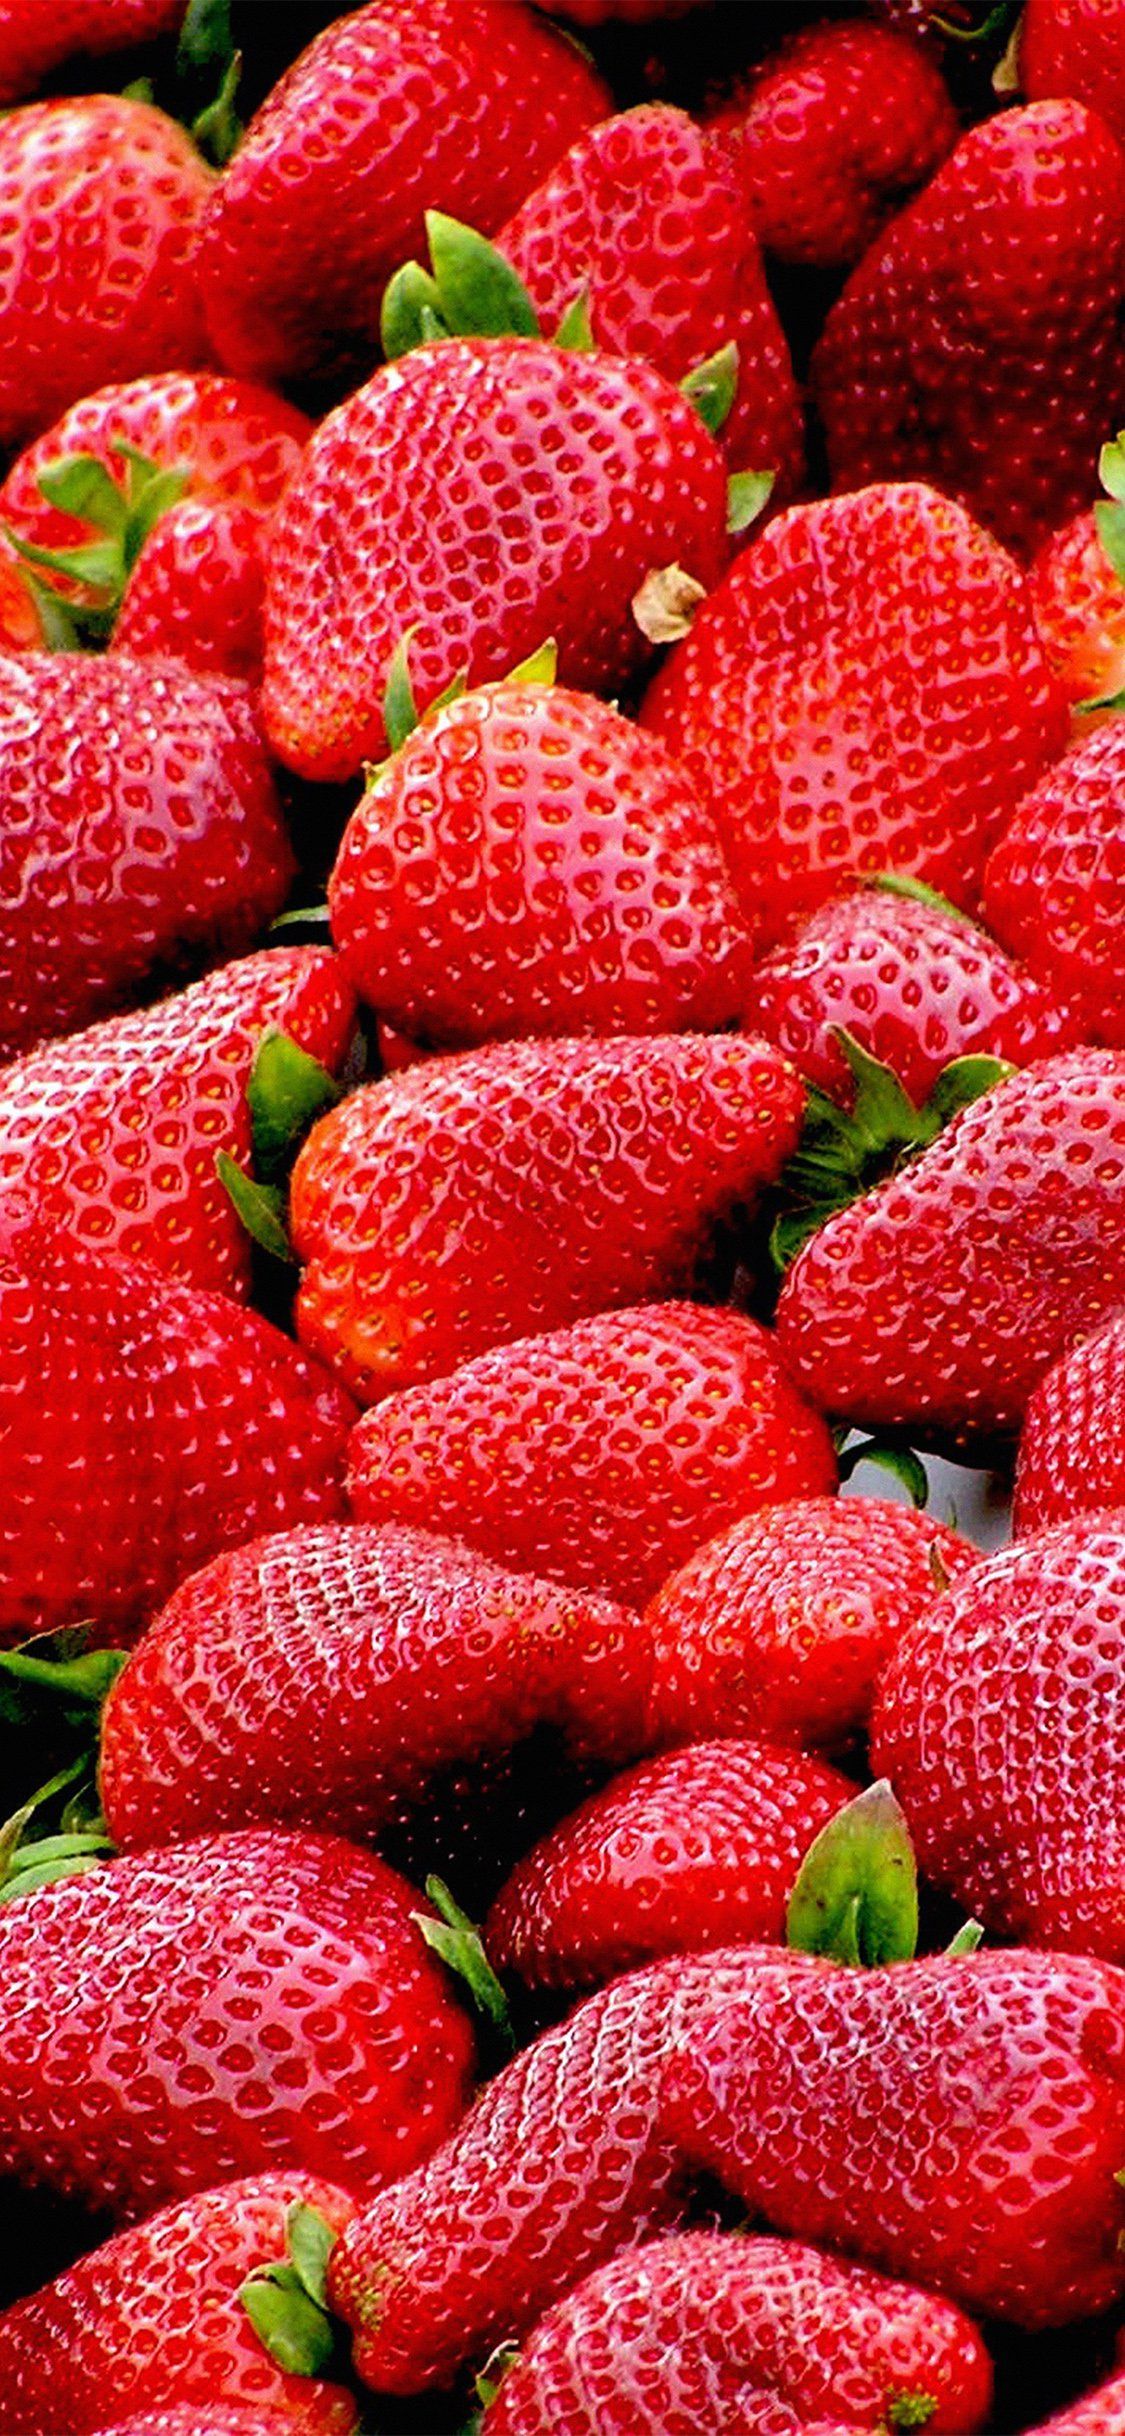 Download Fruit Wallpaper Background RoyaltyFree Stock Illustration Image   Pixabay